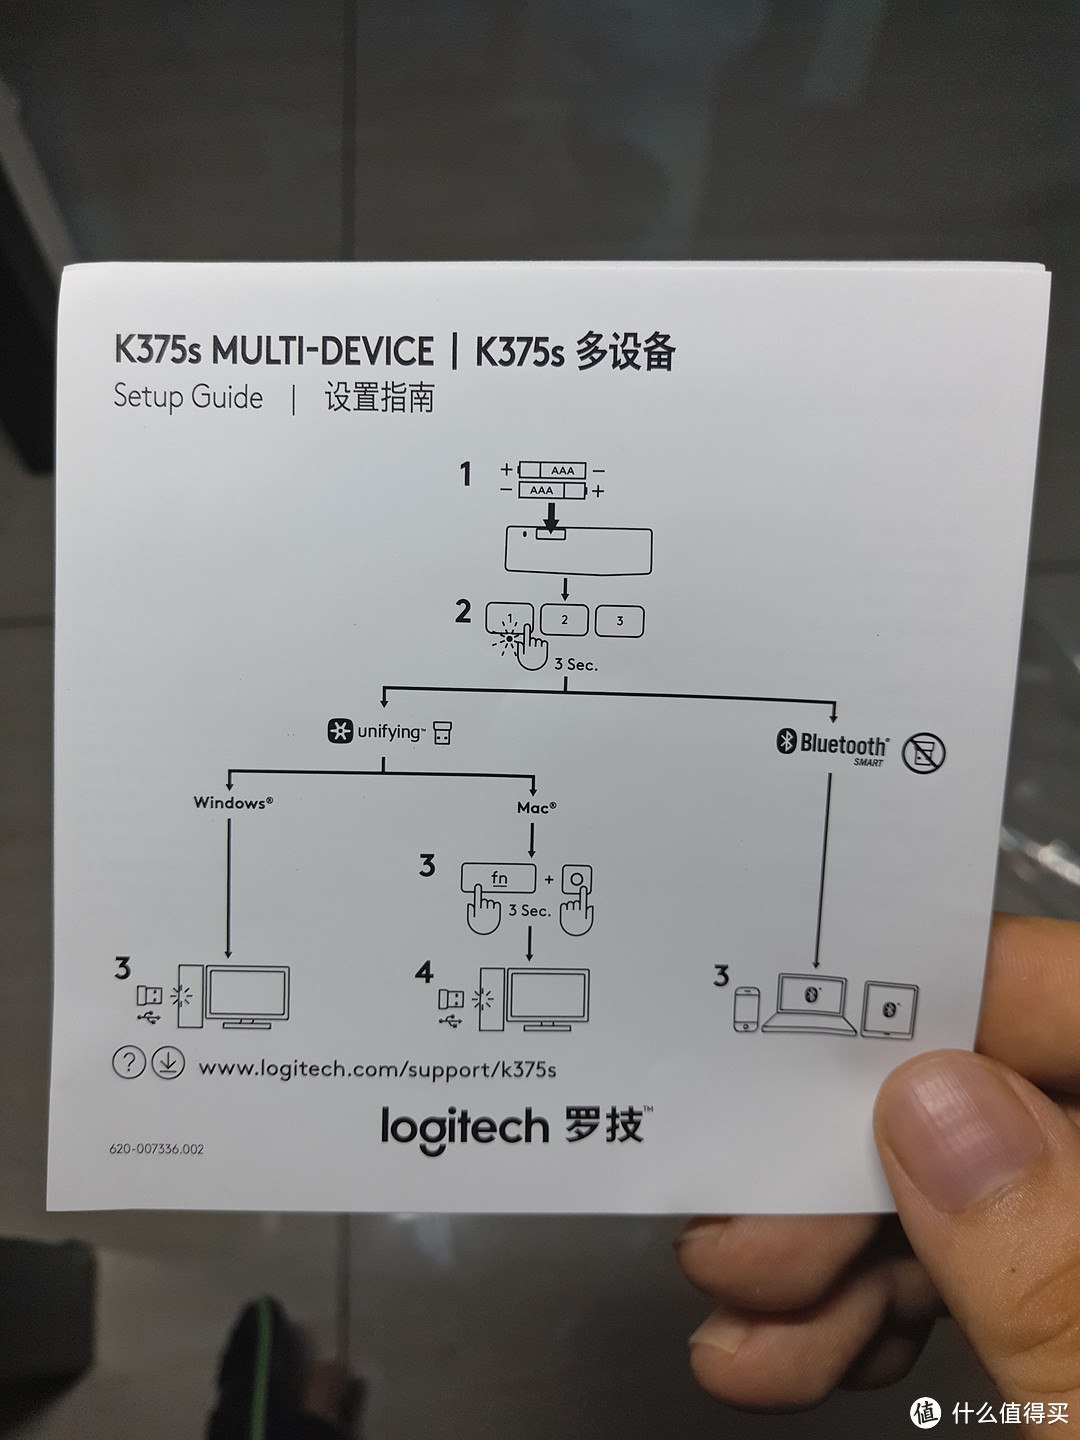 客厅娱乐系统输入端设备更新：Logitech 罗技 K375s 多设备 无线蓝牙键盘 开箱+使用感受